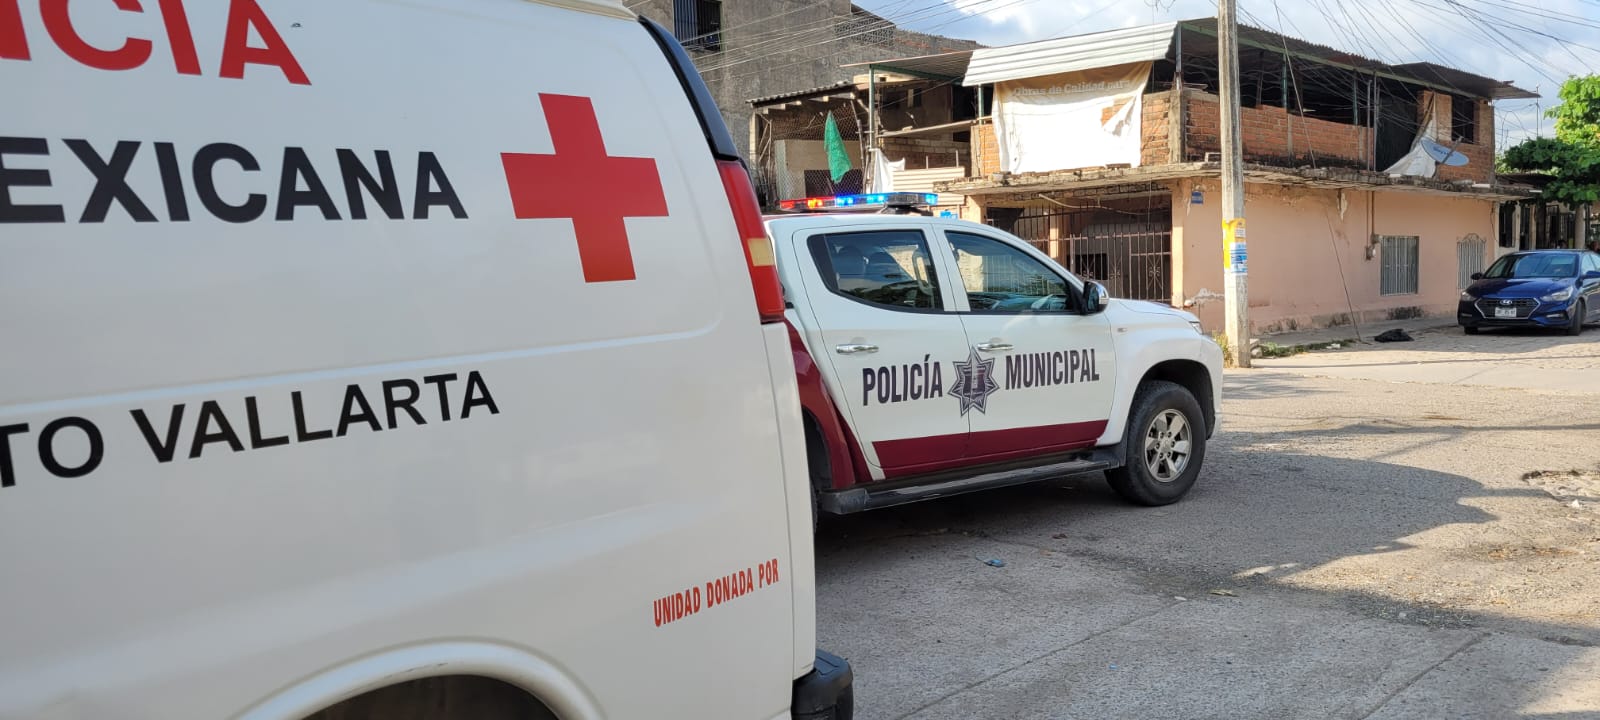 Ambulancia y patulla en El Pitillal